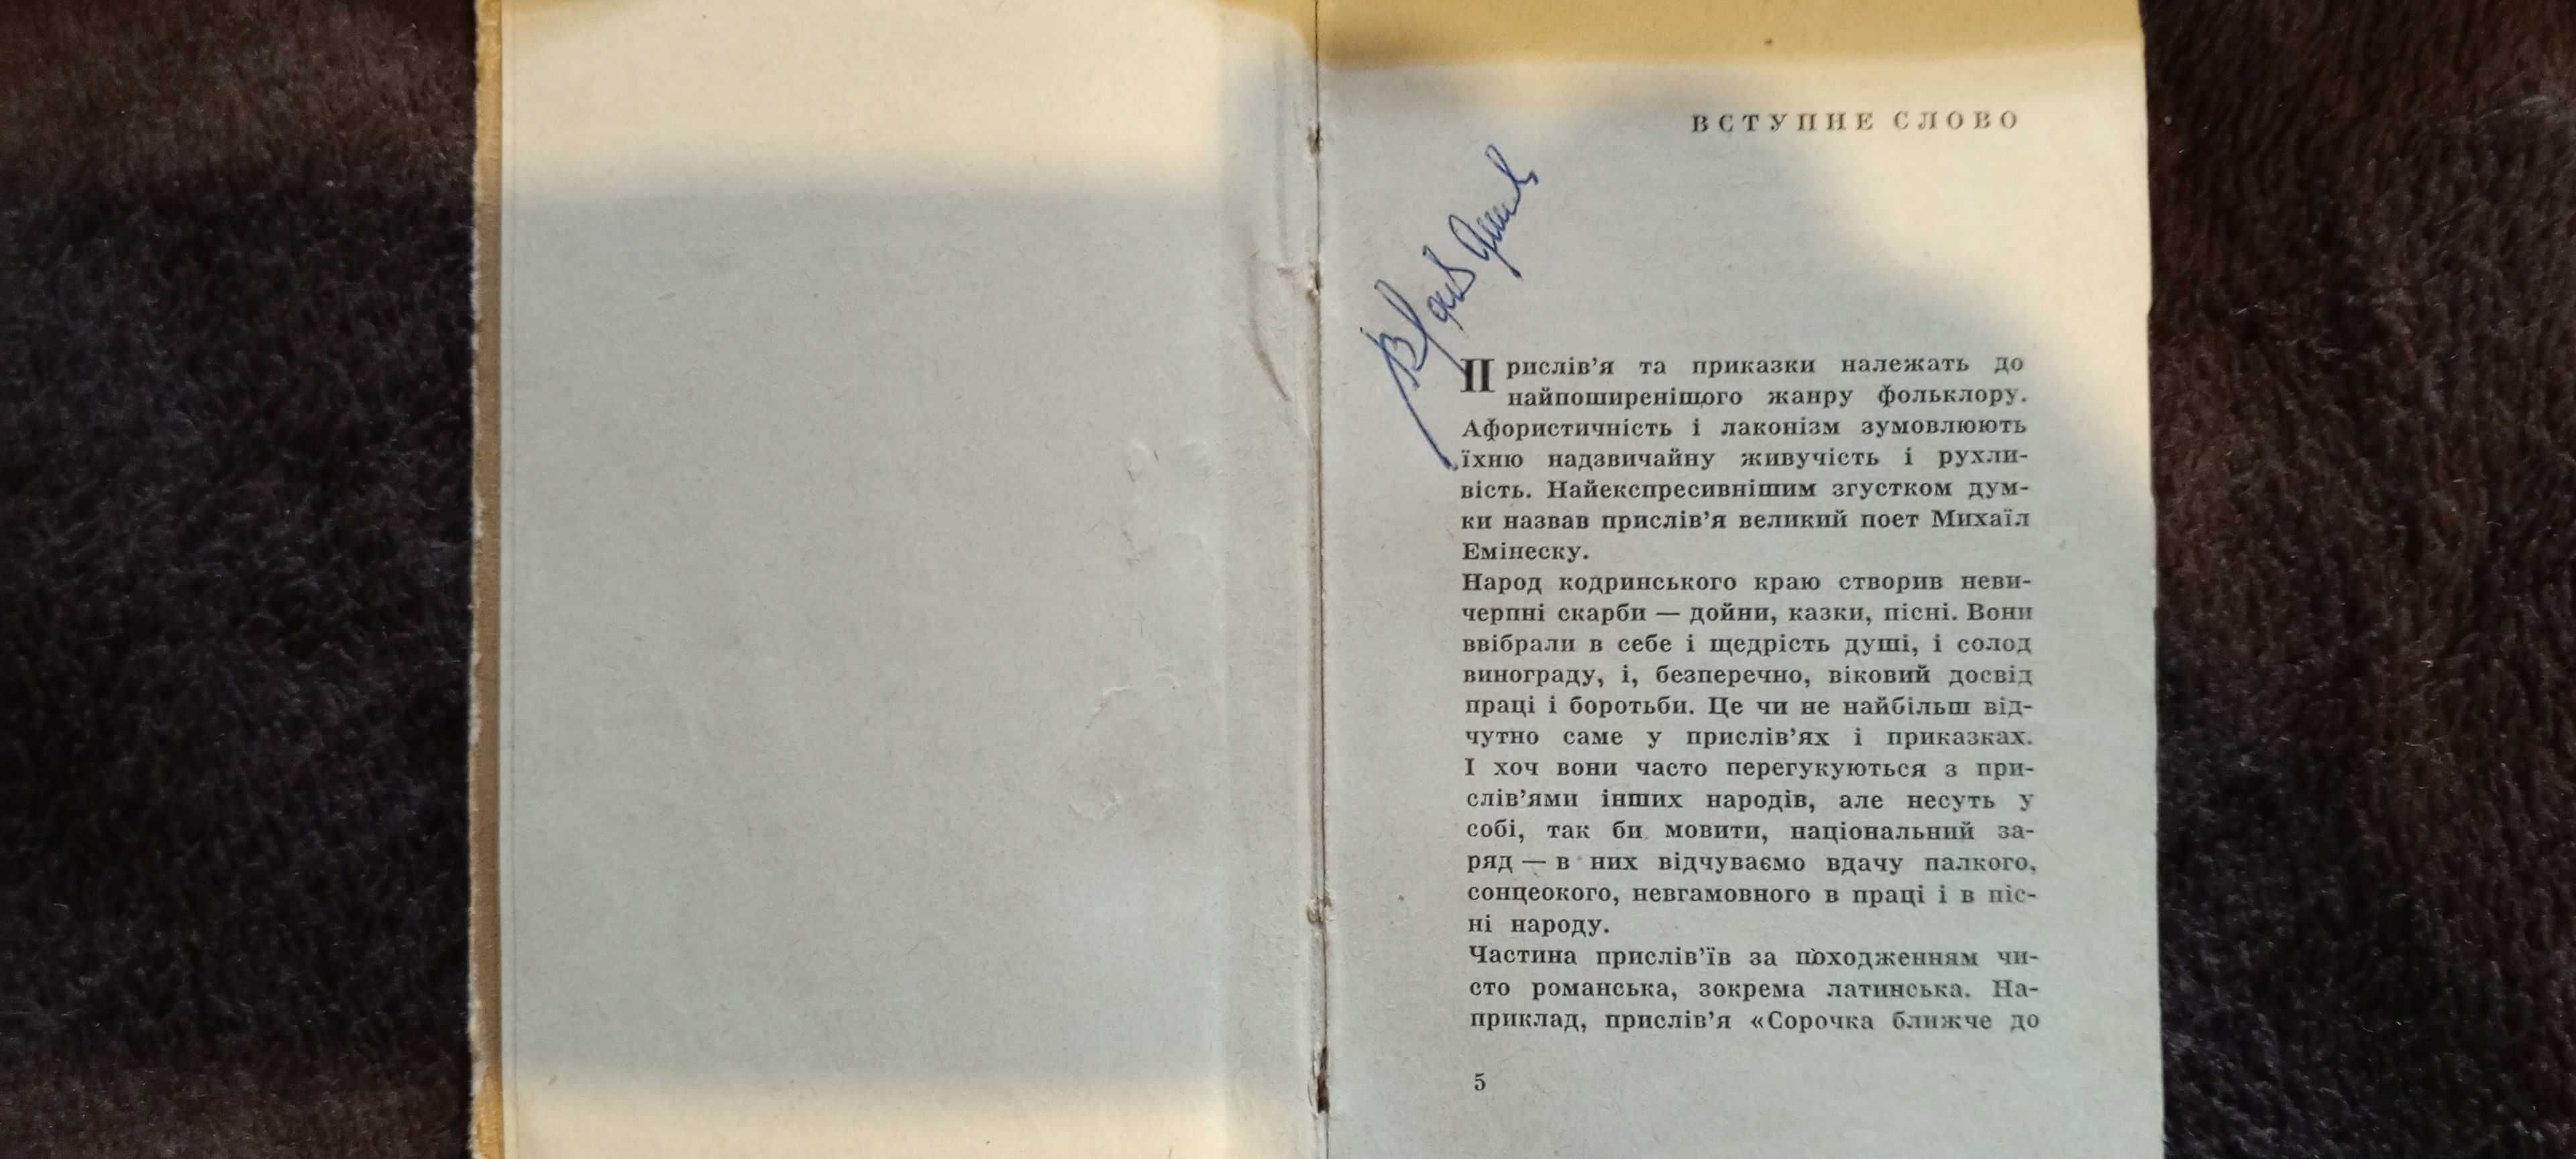 Книга молдавские пословици и поговорки 1969 г.  укр.